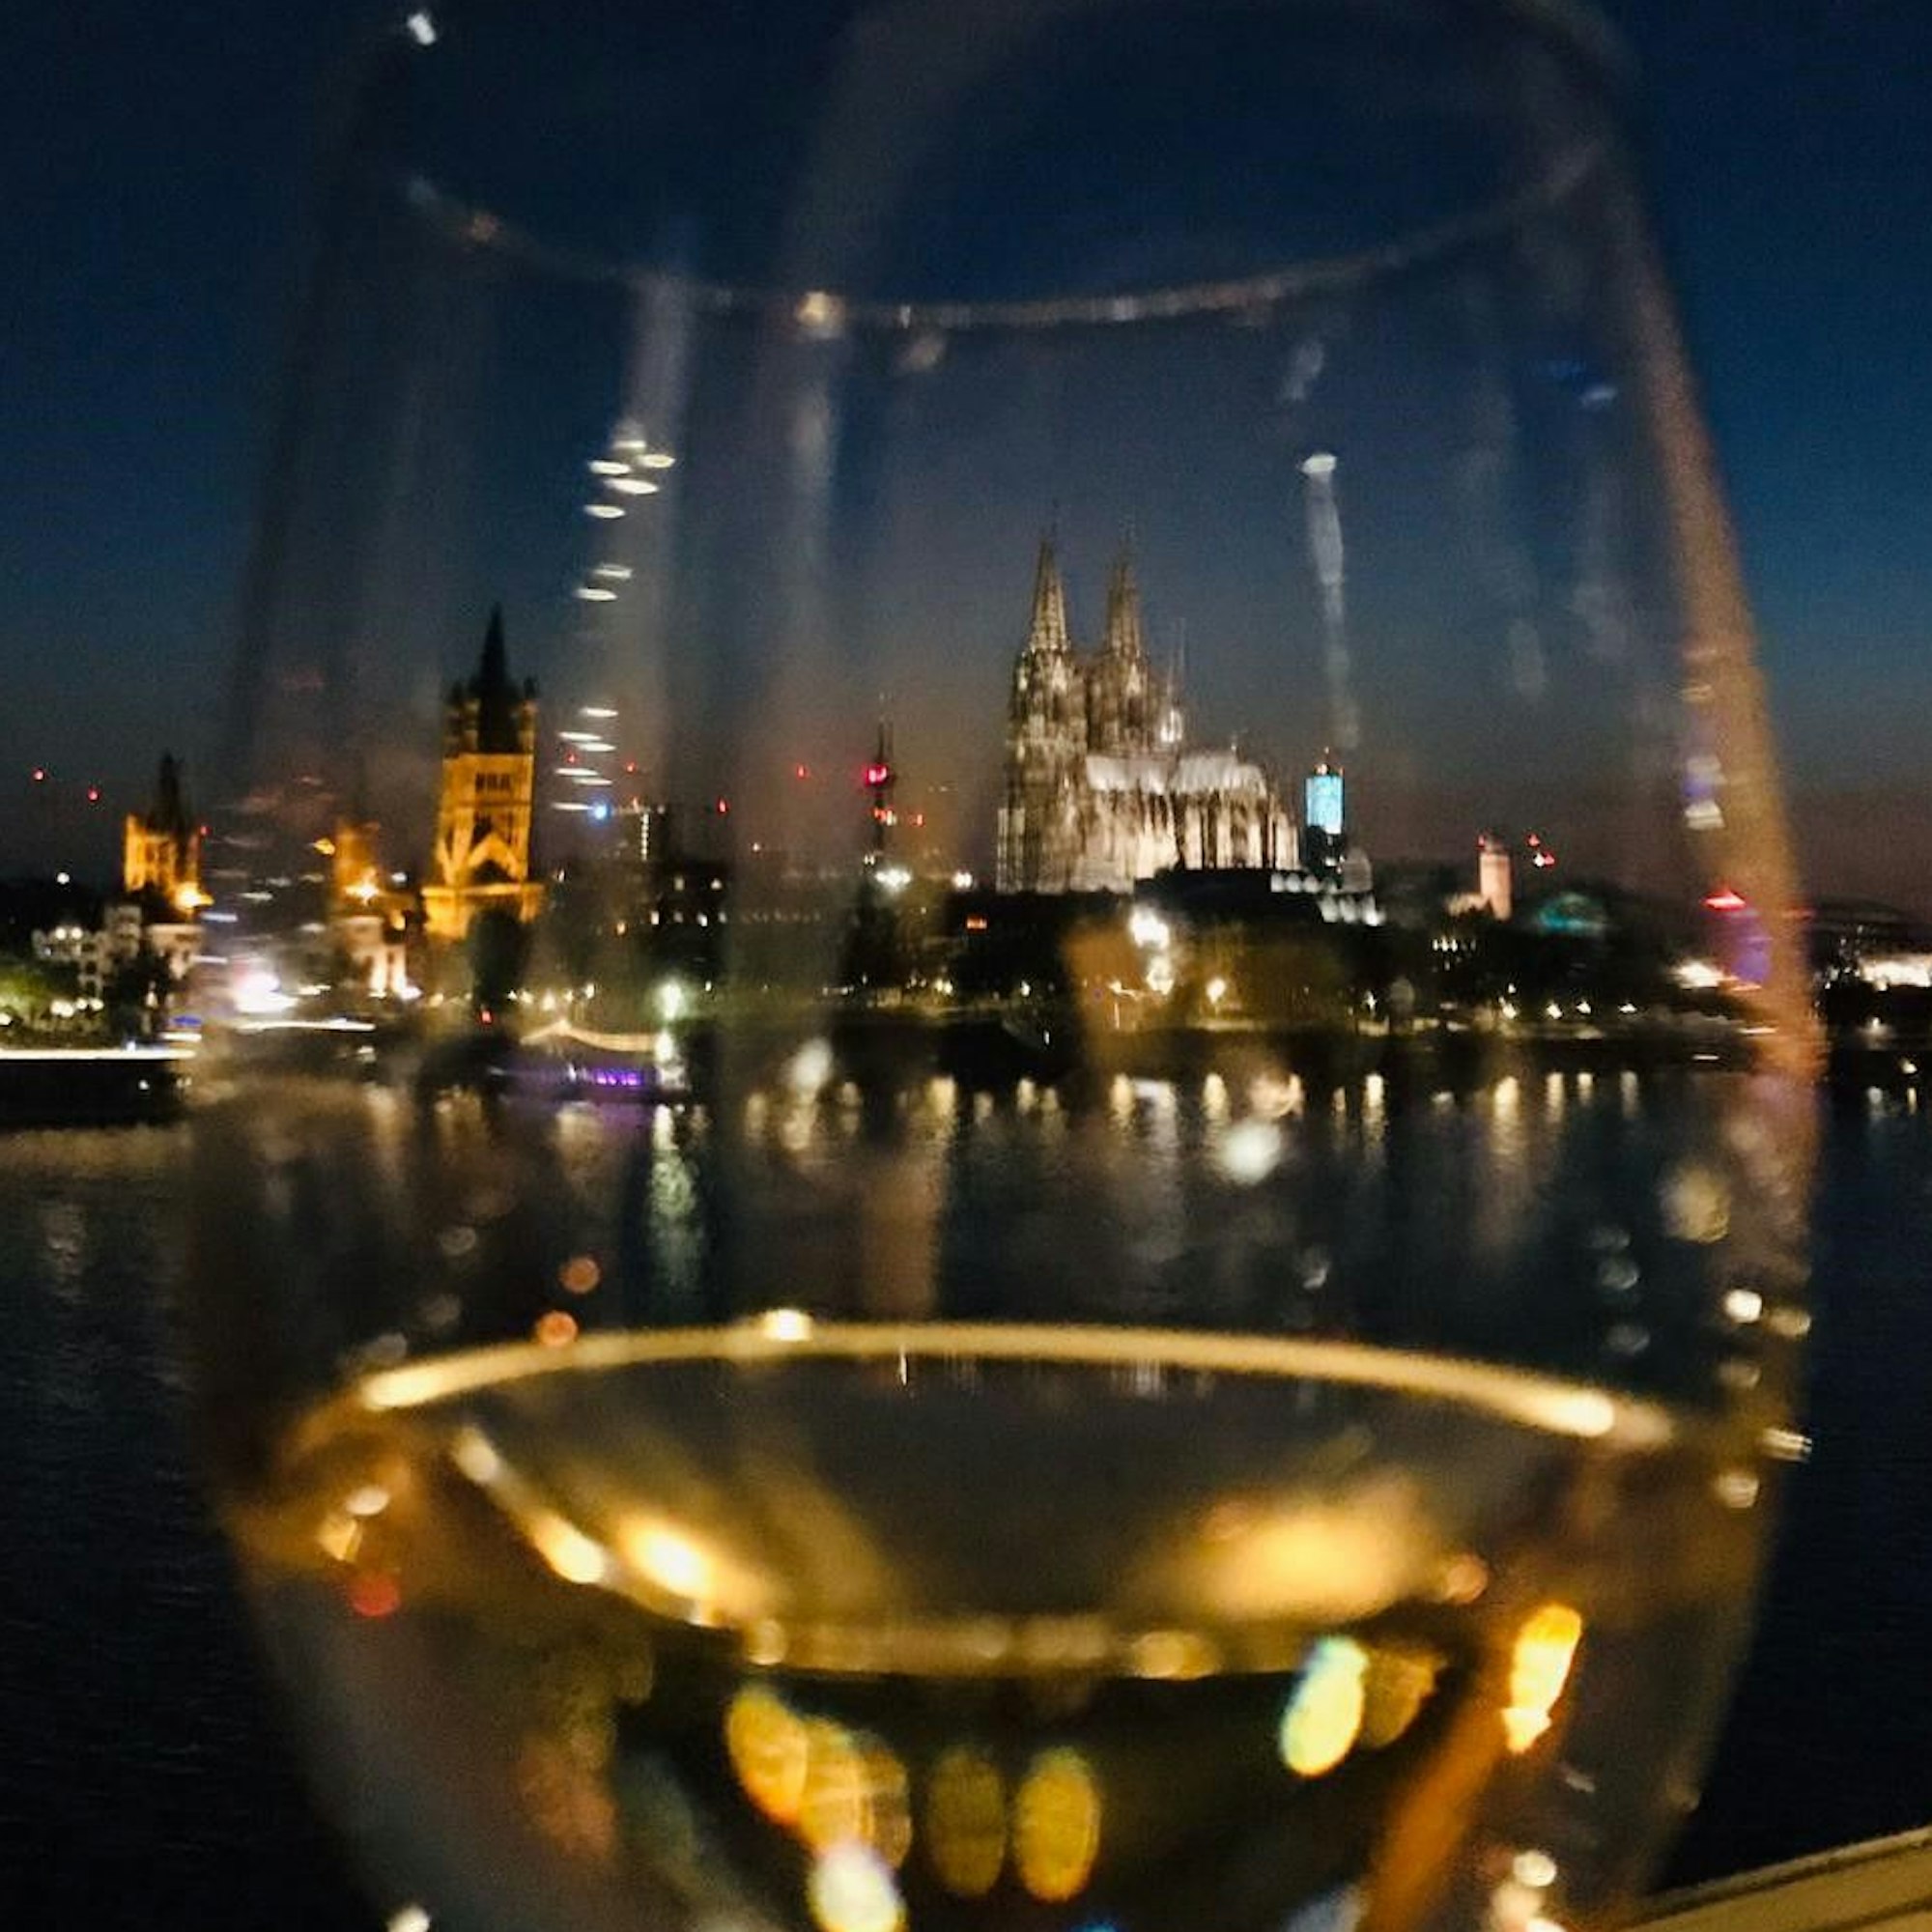 Das Stadtpanorama abends durch ein Weinglas gesehen